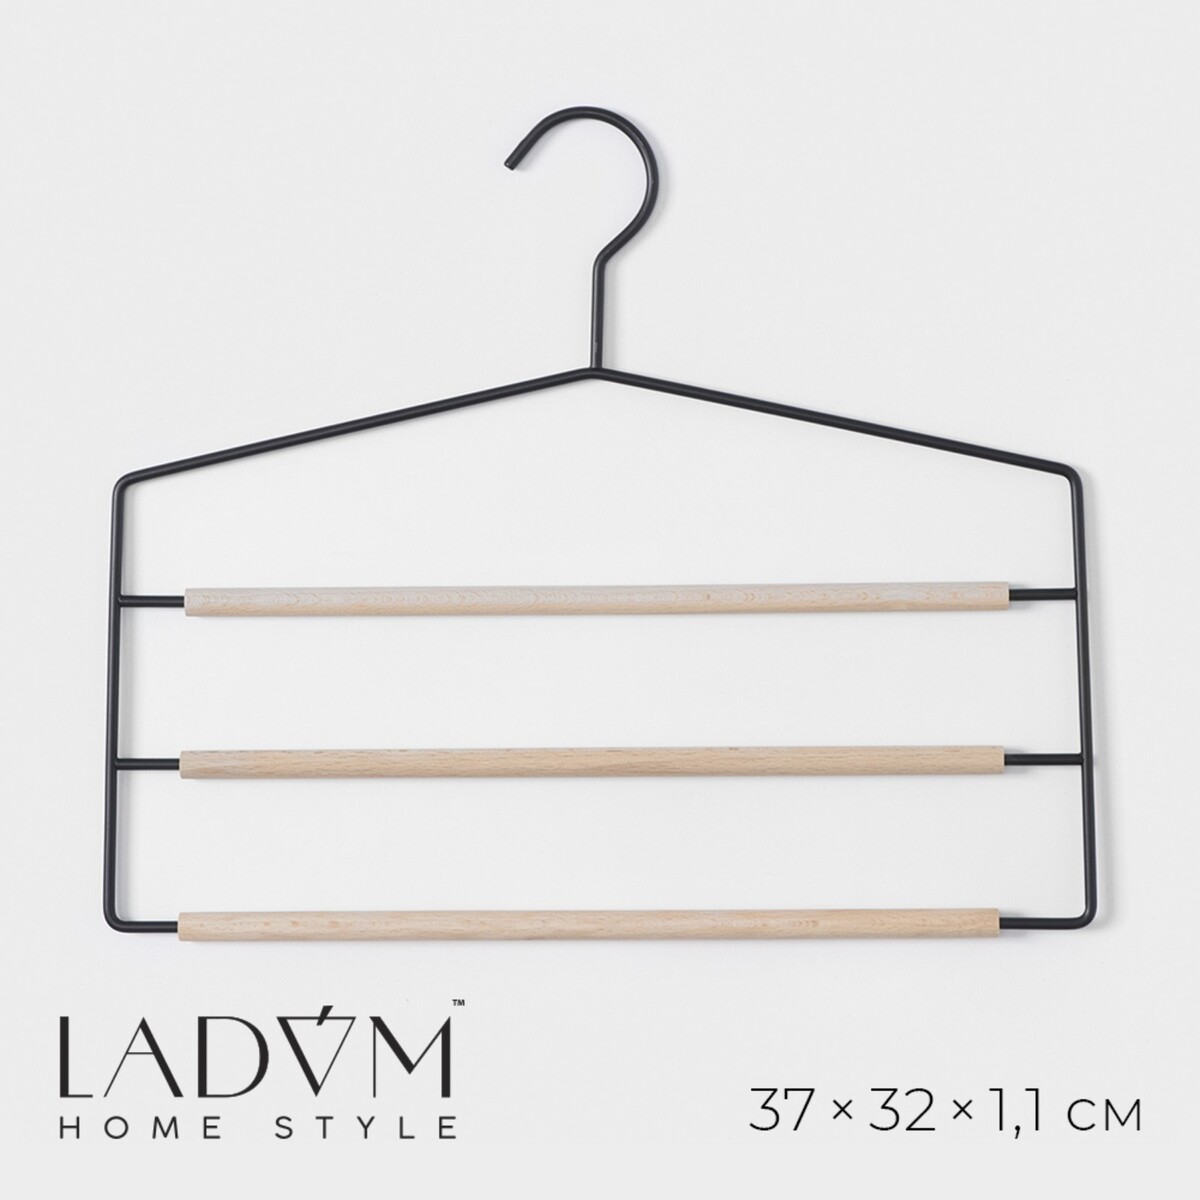 Плечики - вешалки для брюк и юбок многоуровневые ladо́m laconique, 37×31,5×1,1 см, цвет черный